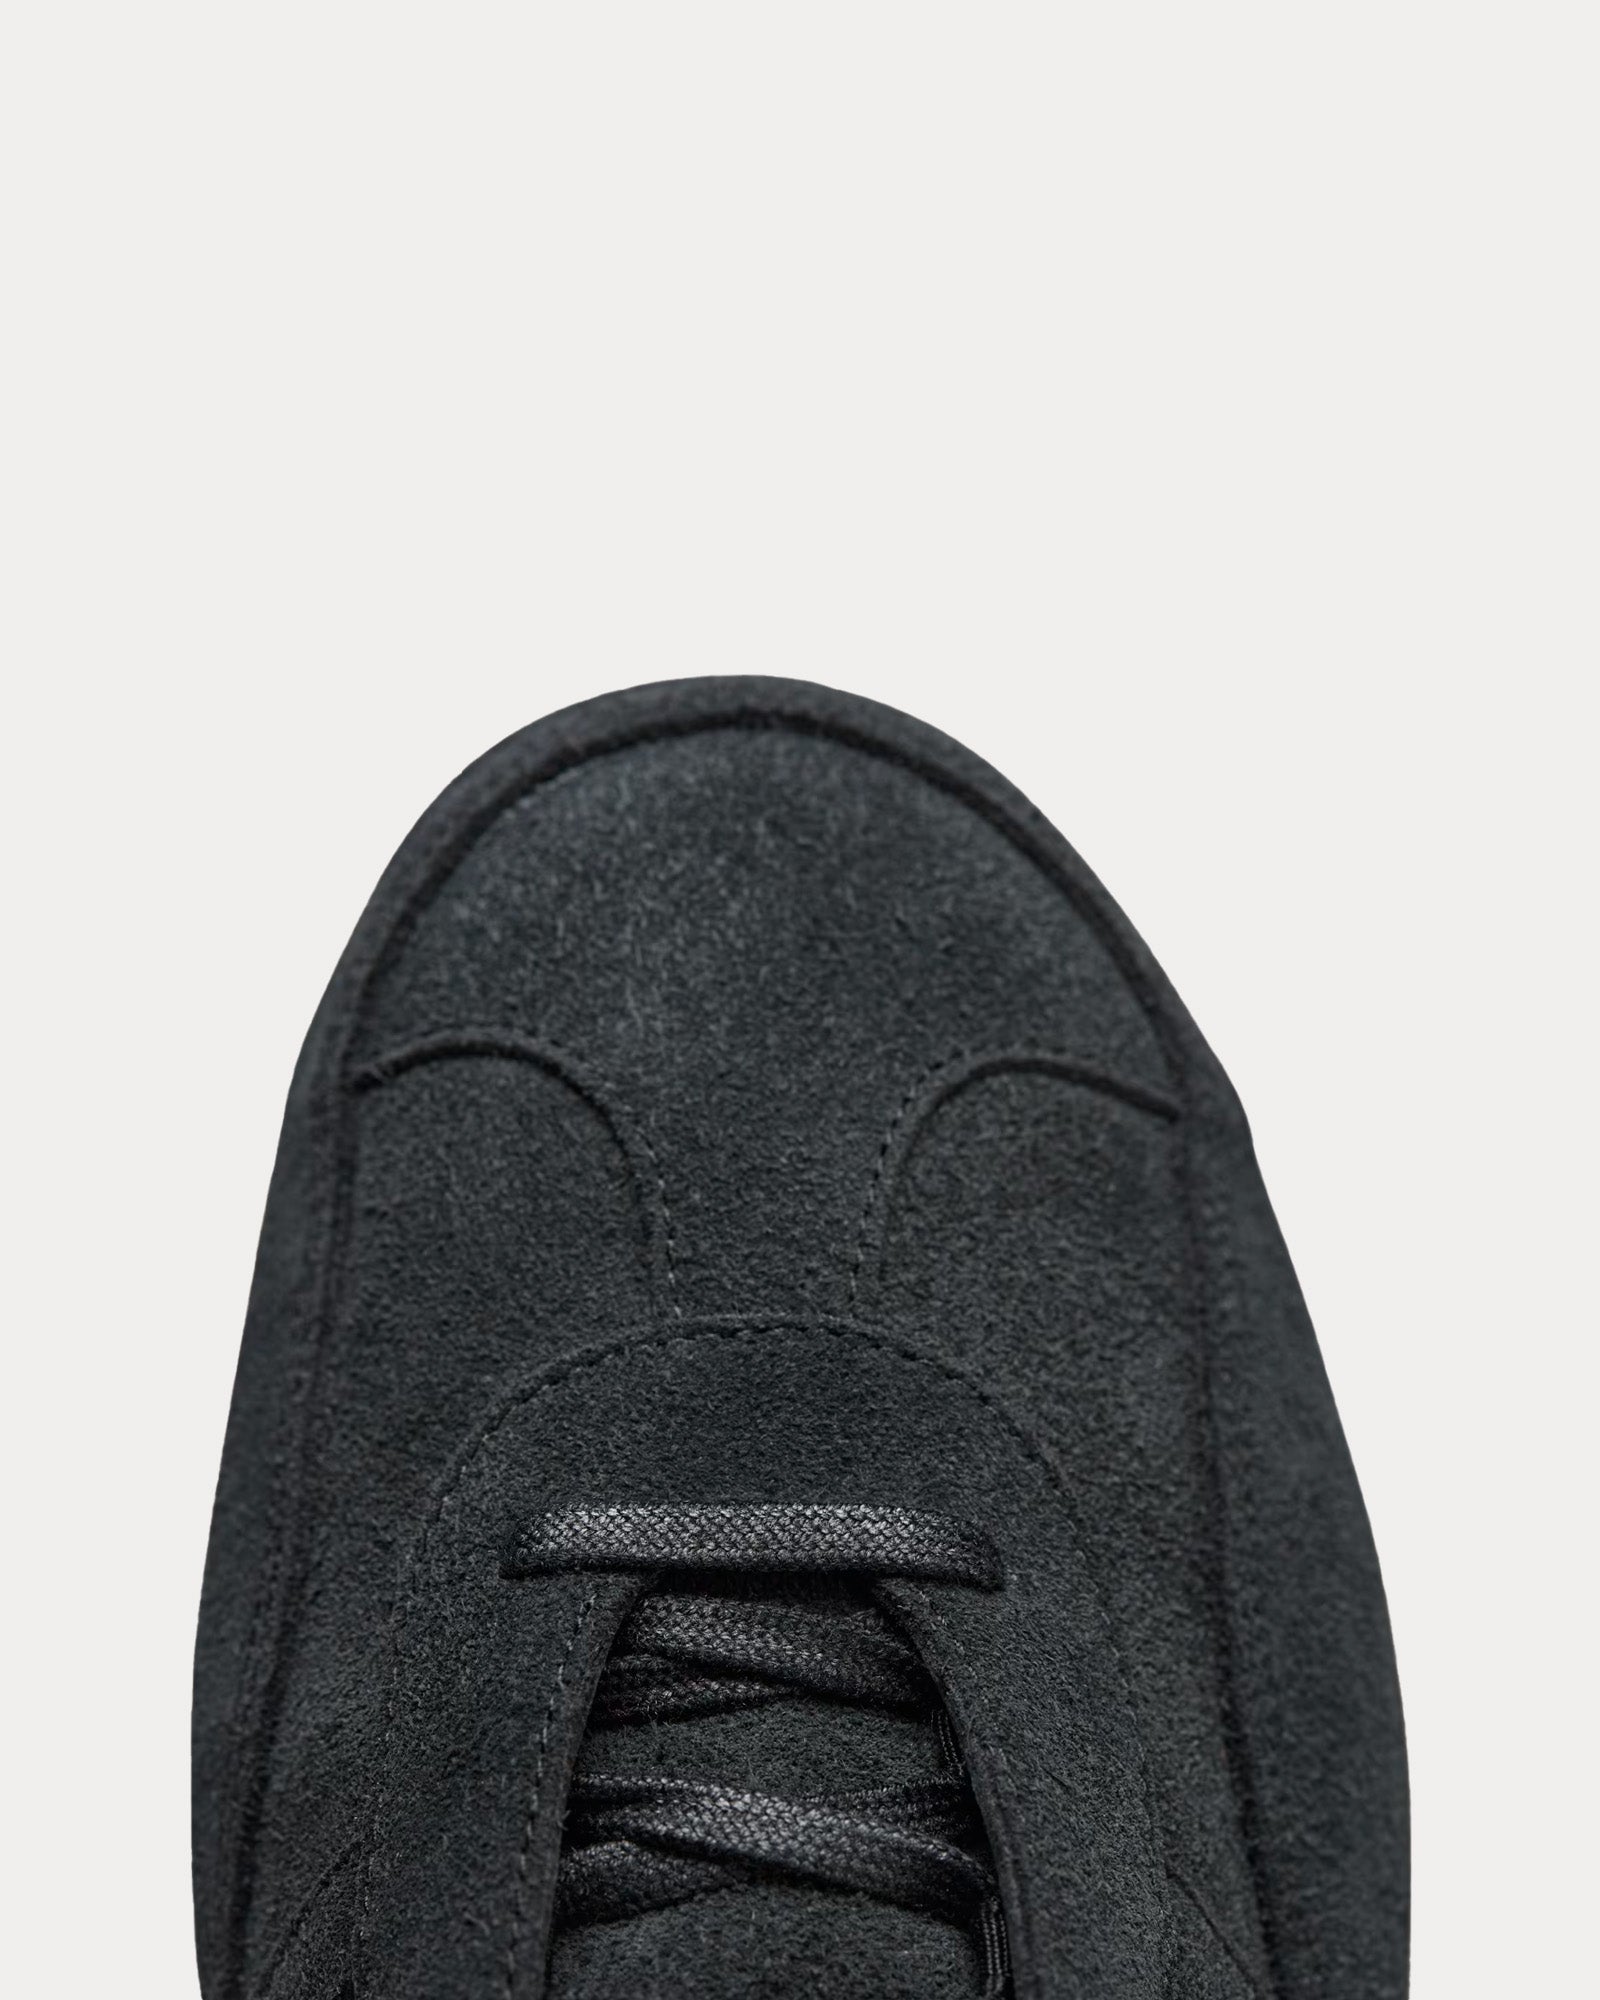 Y-3 - Gazelle Suede Black / Black / Black Low Top Sneakers